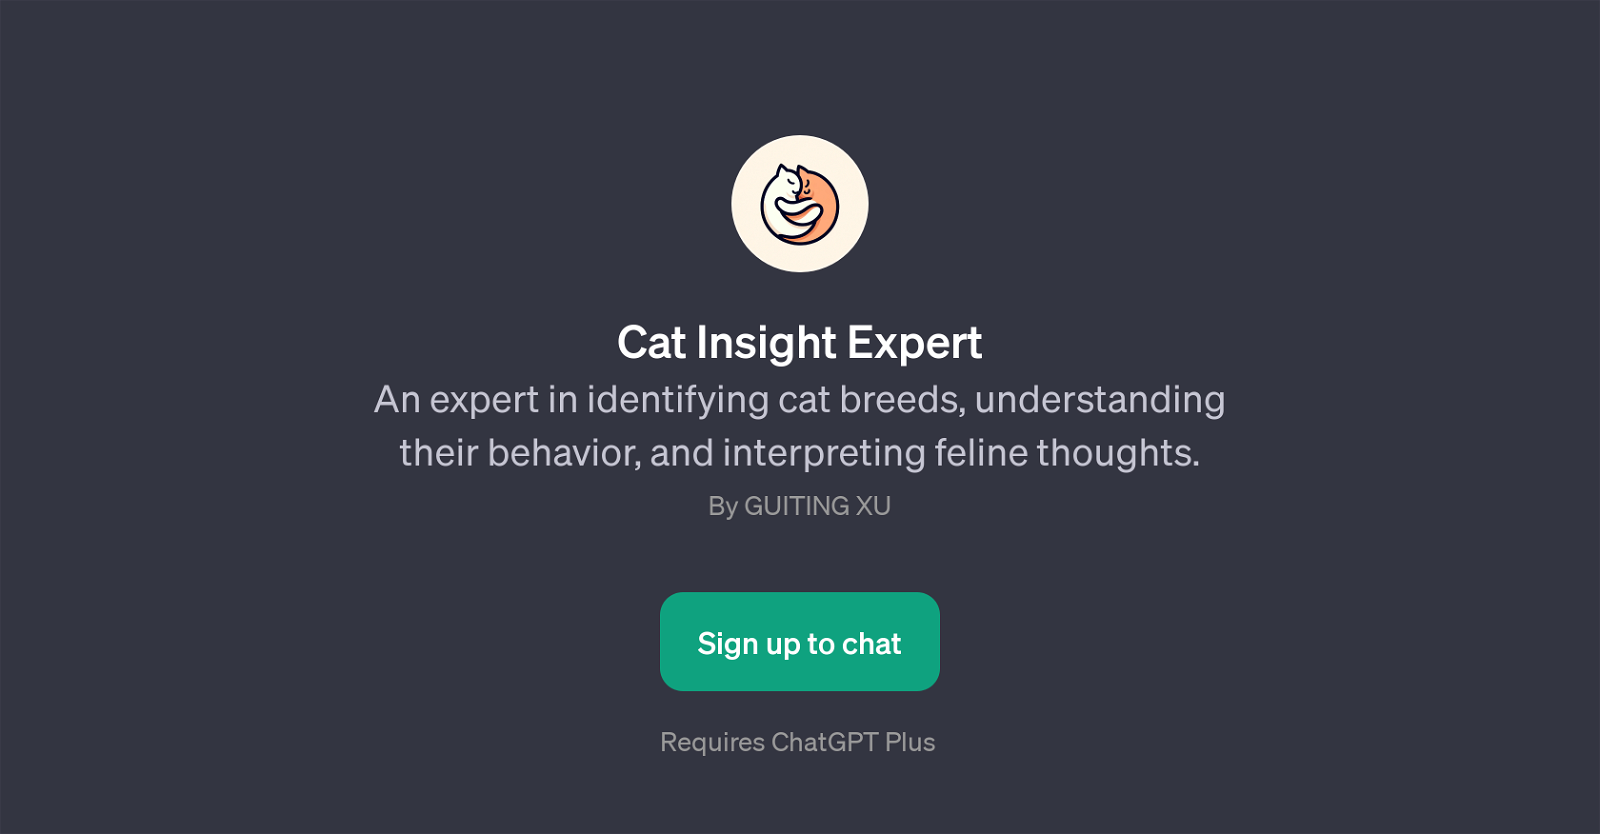 Cat Insight Expert website